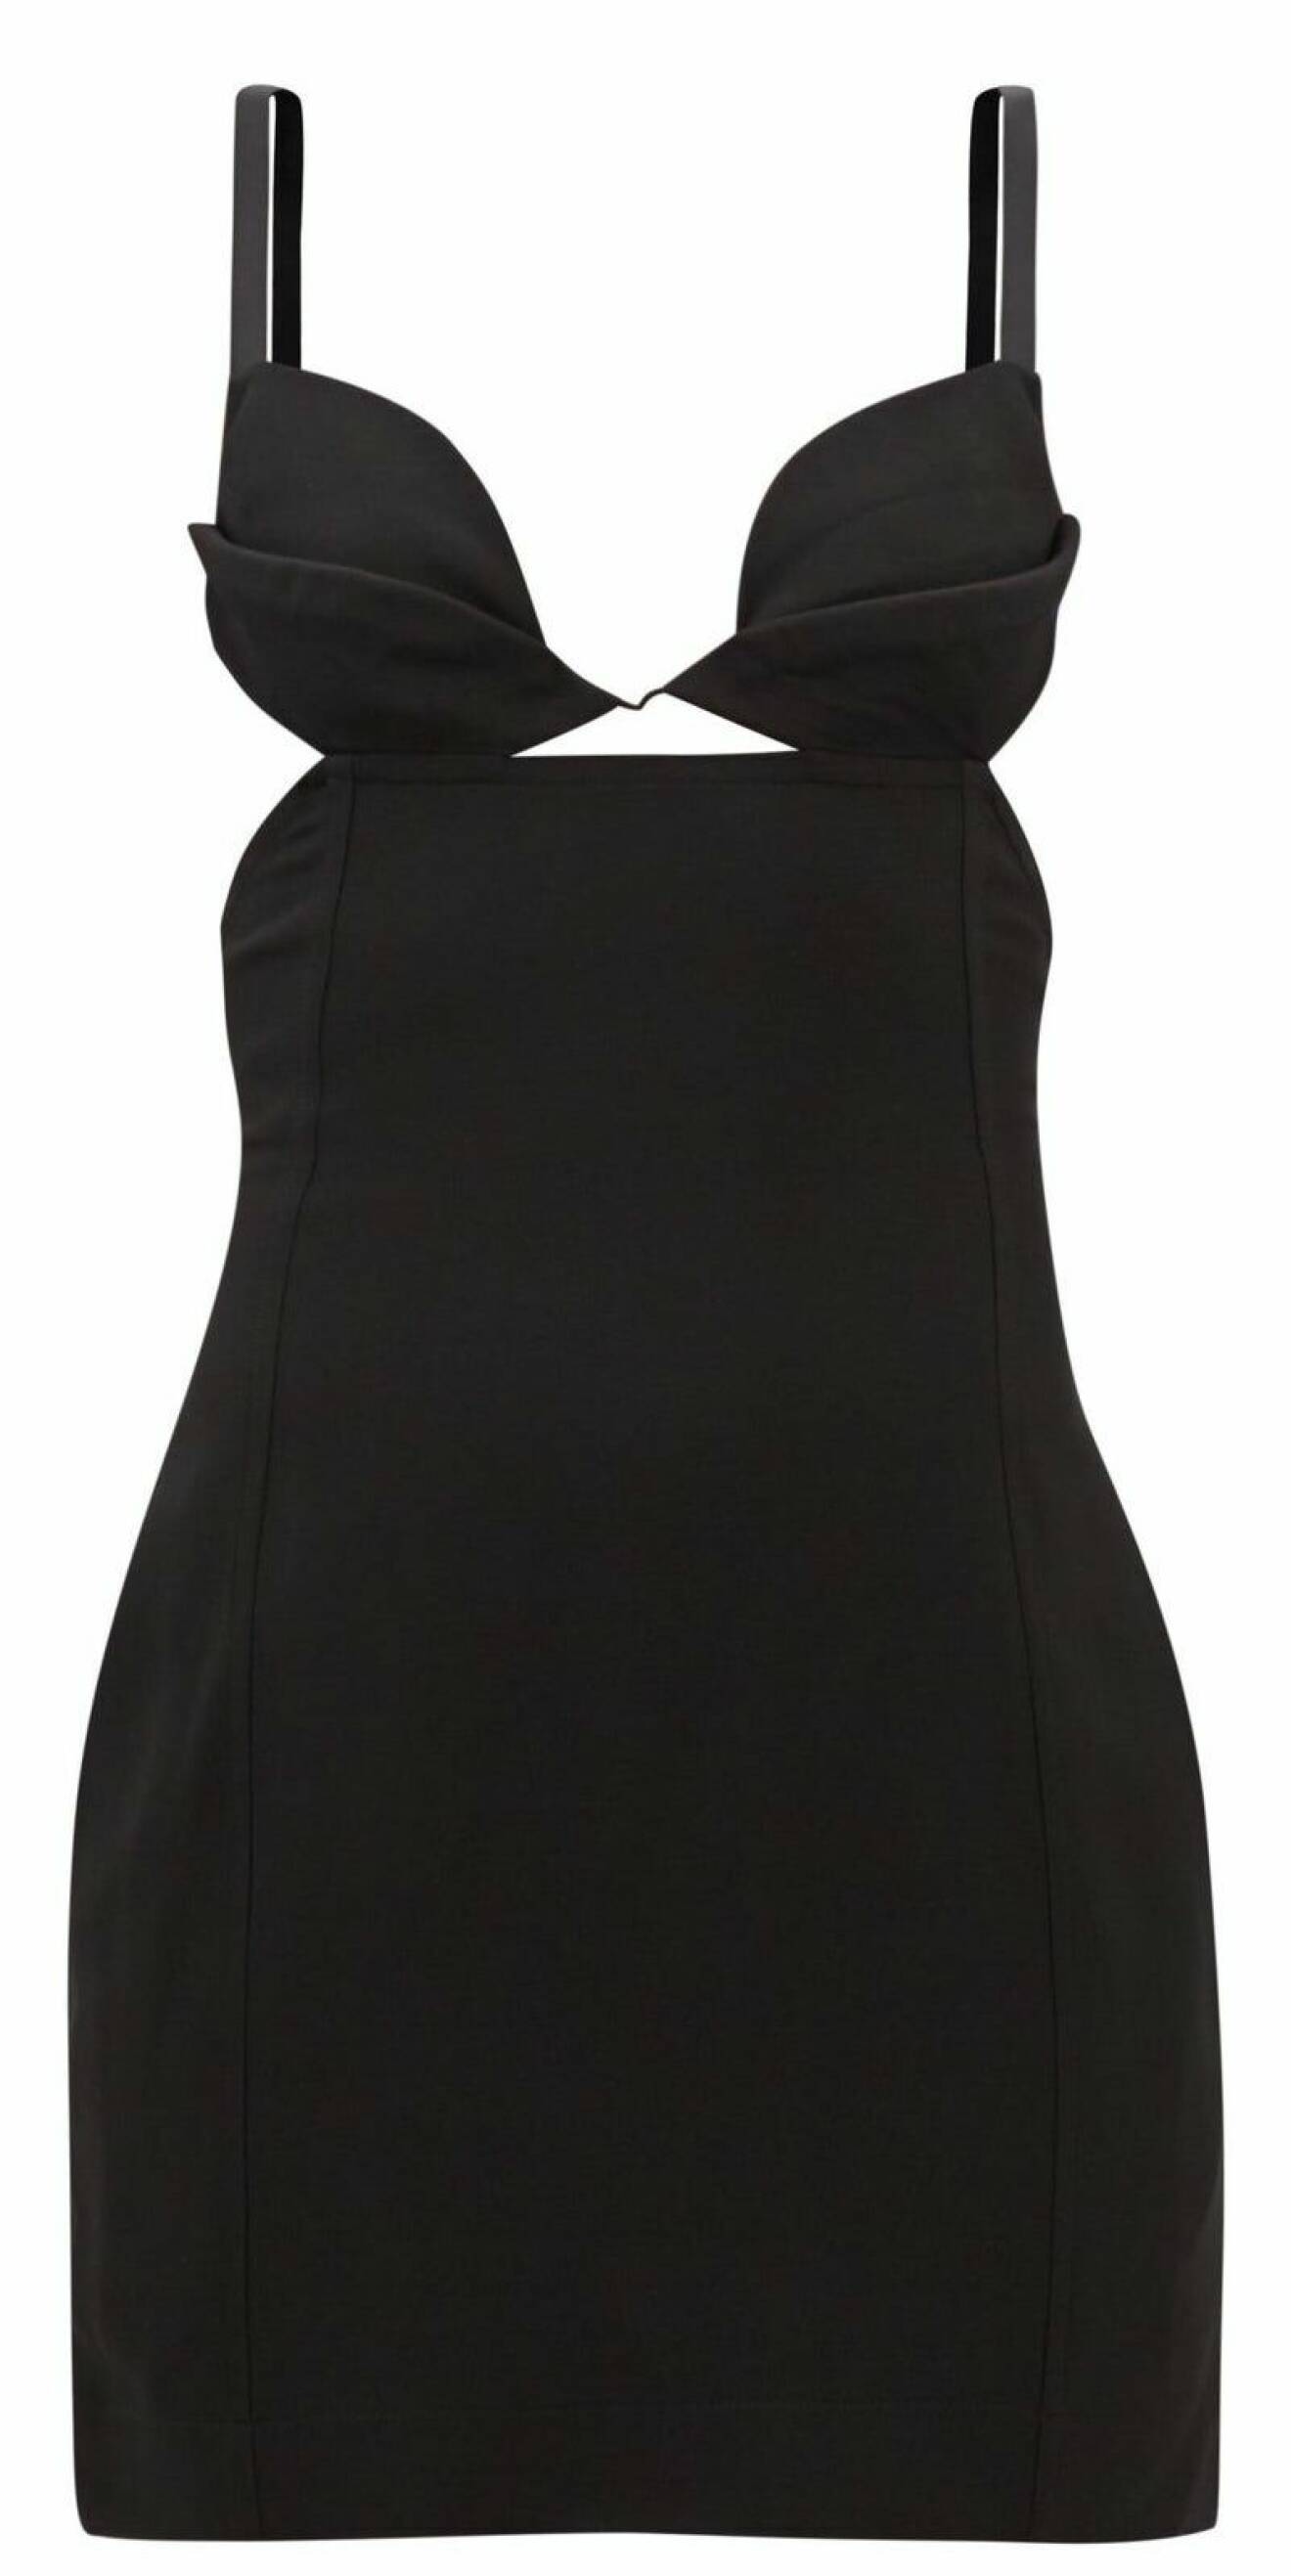 Enkel svart klänning med liten cutout från Nensi Dojaka.